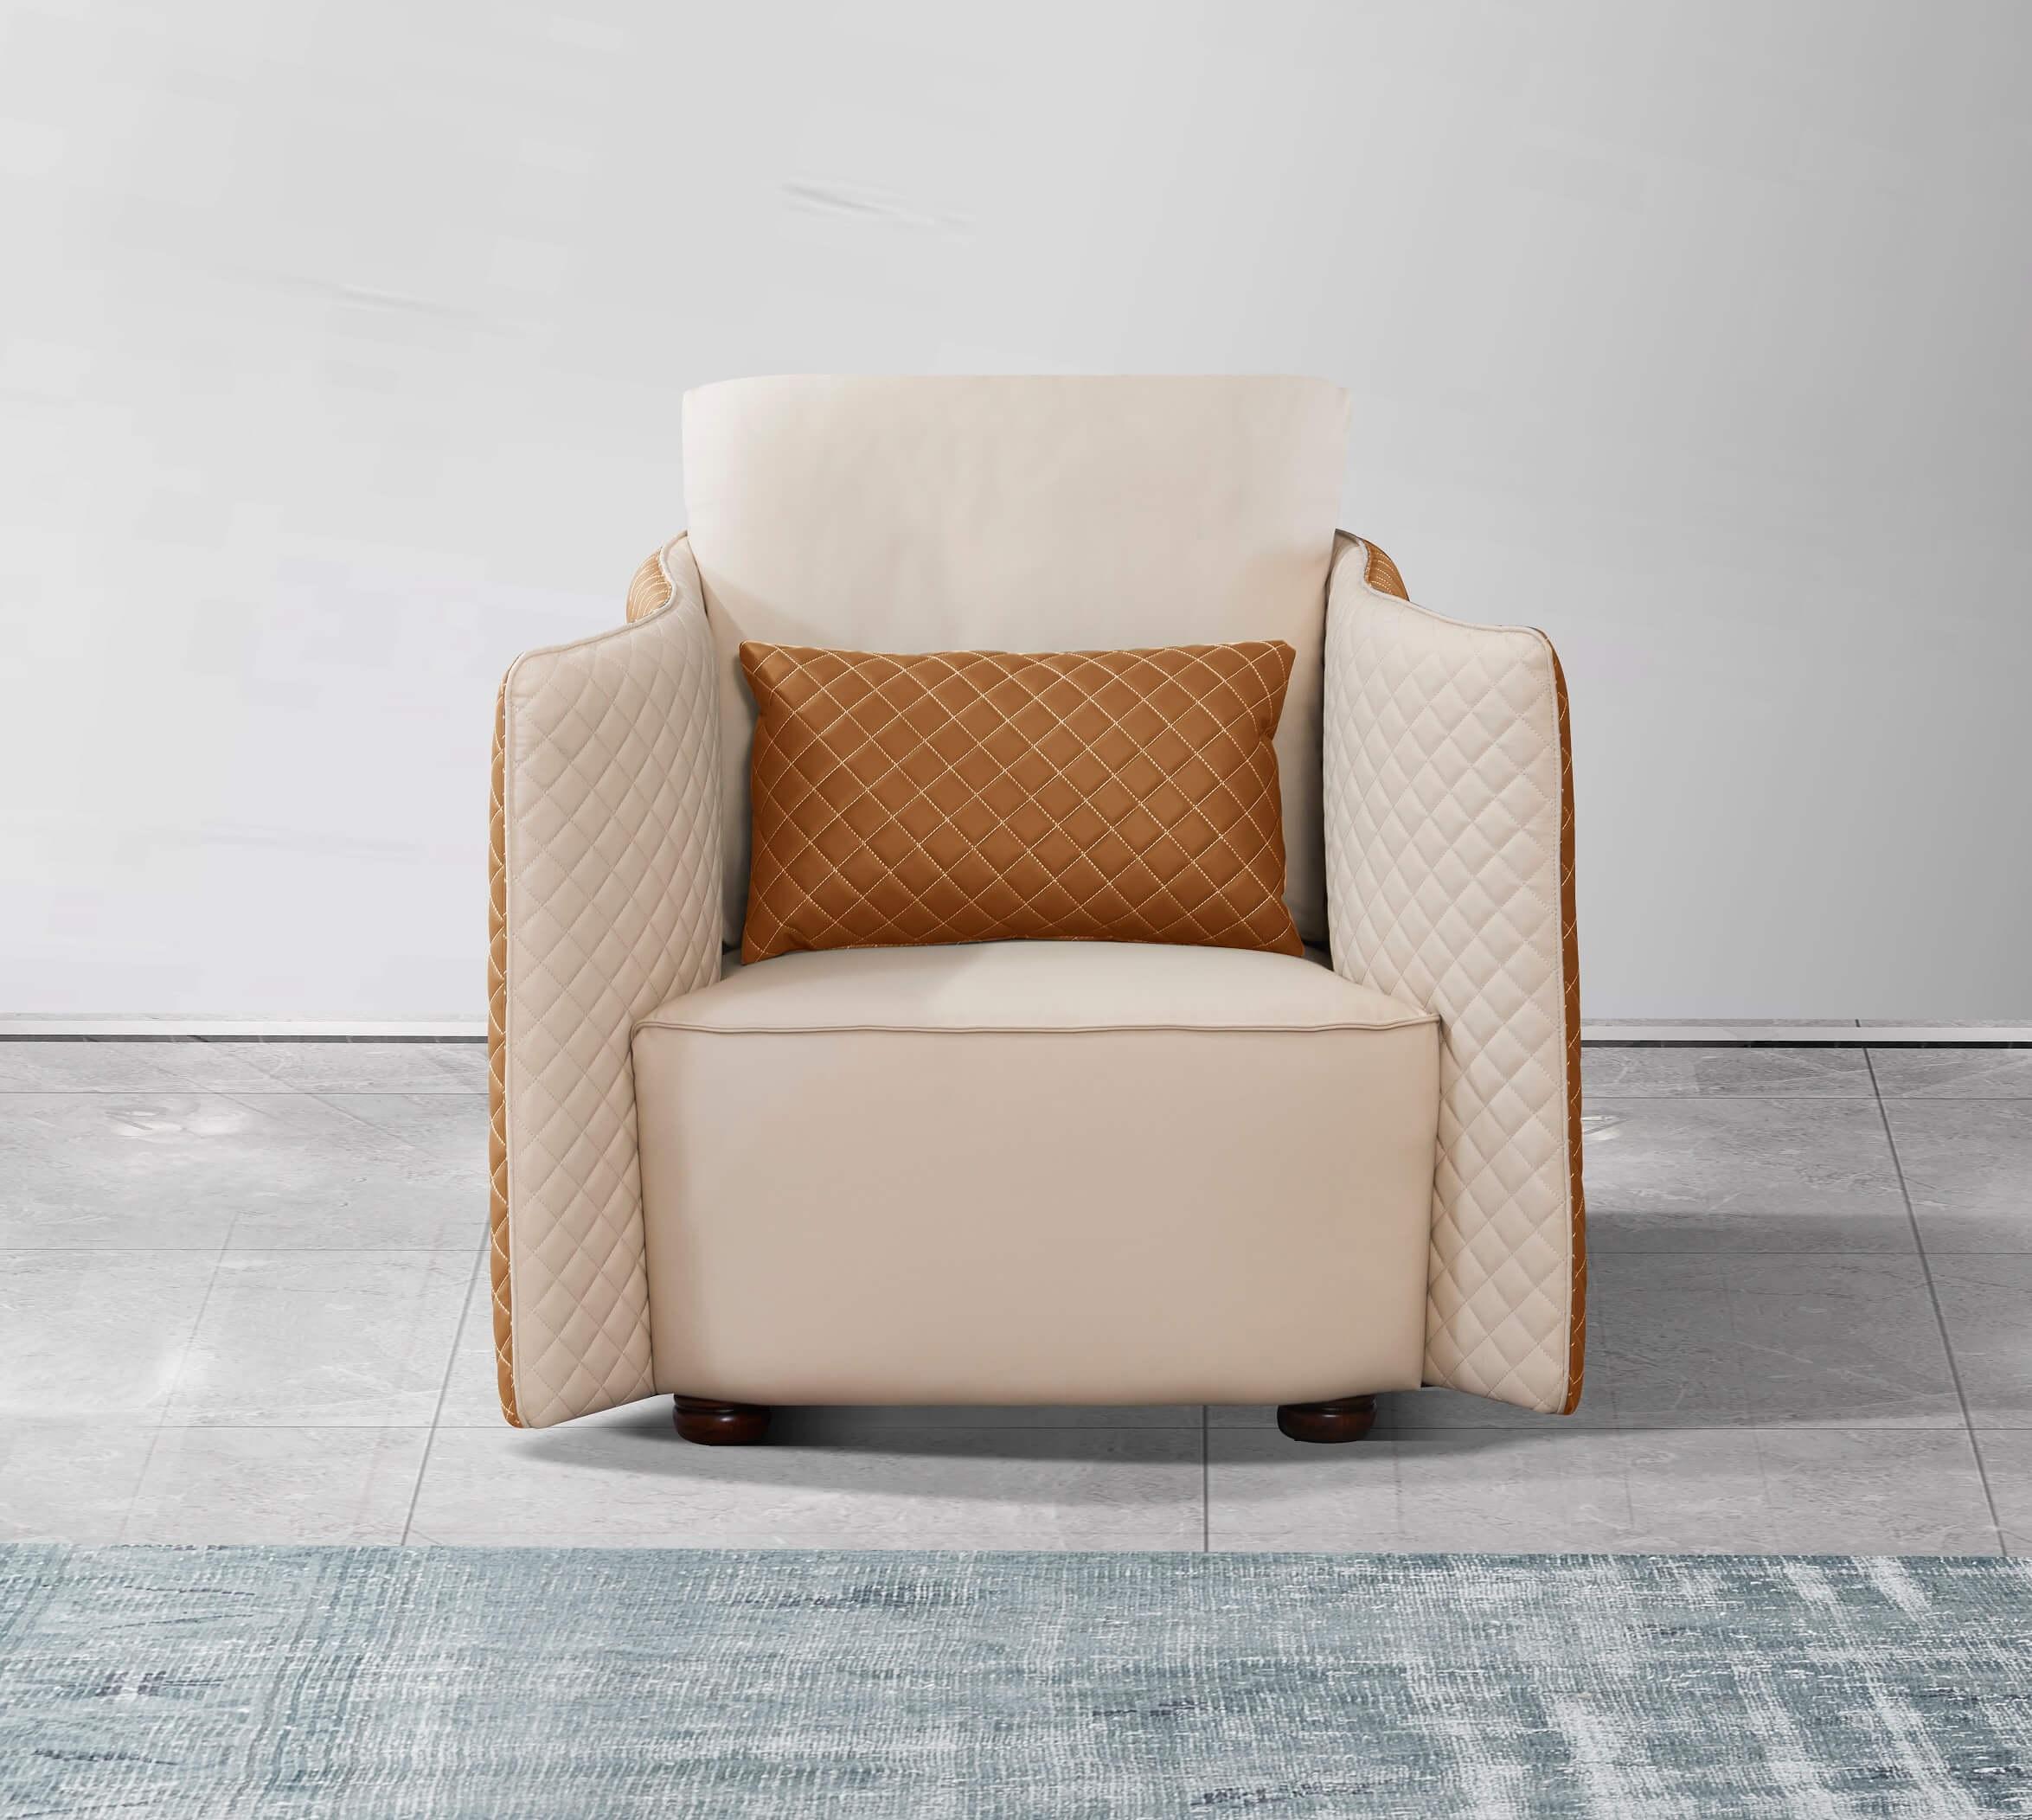 

    
 Order  Luxury Italian Leather Beige & Orange Sofa Set 3Pcs MAKASSAR EUROPEAN FURNITURE
